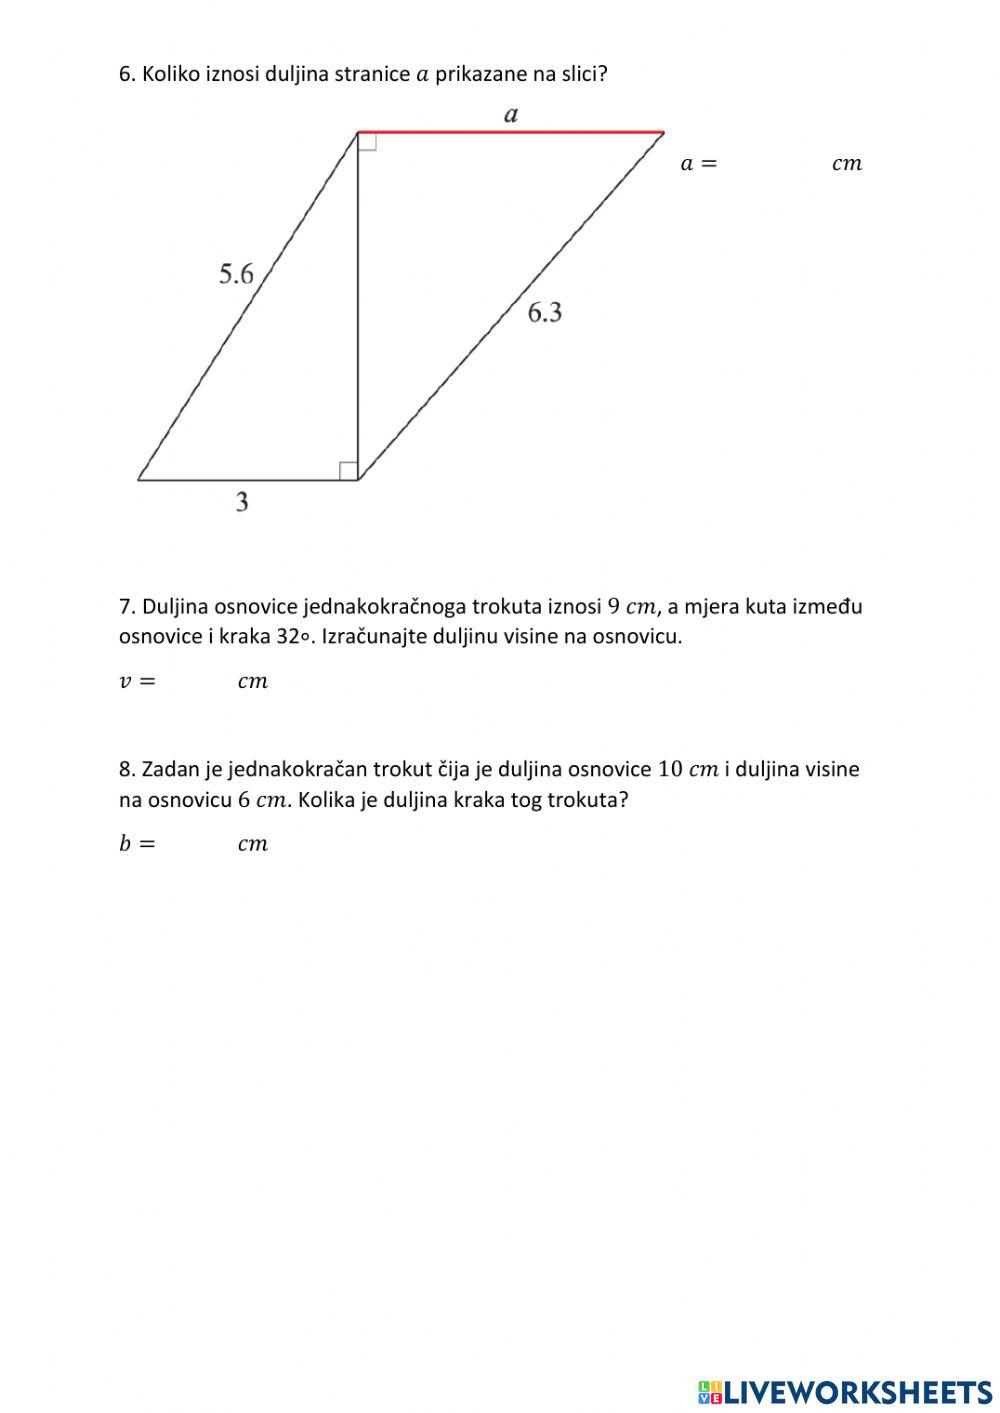 Primjena trigonometrije pravokutnog trokuta u planimetriji 2.dio